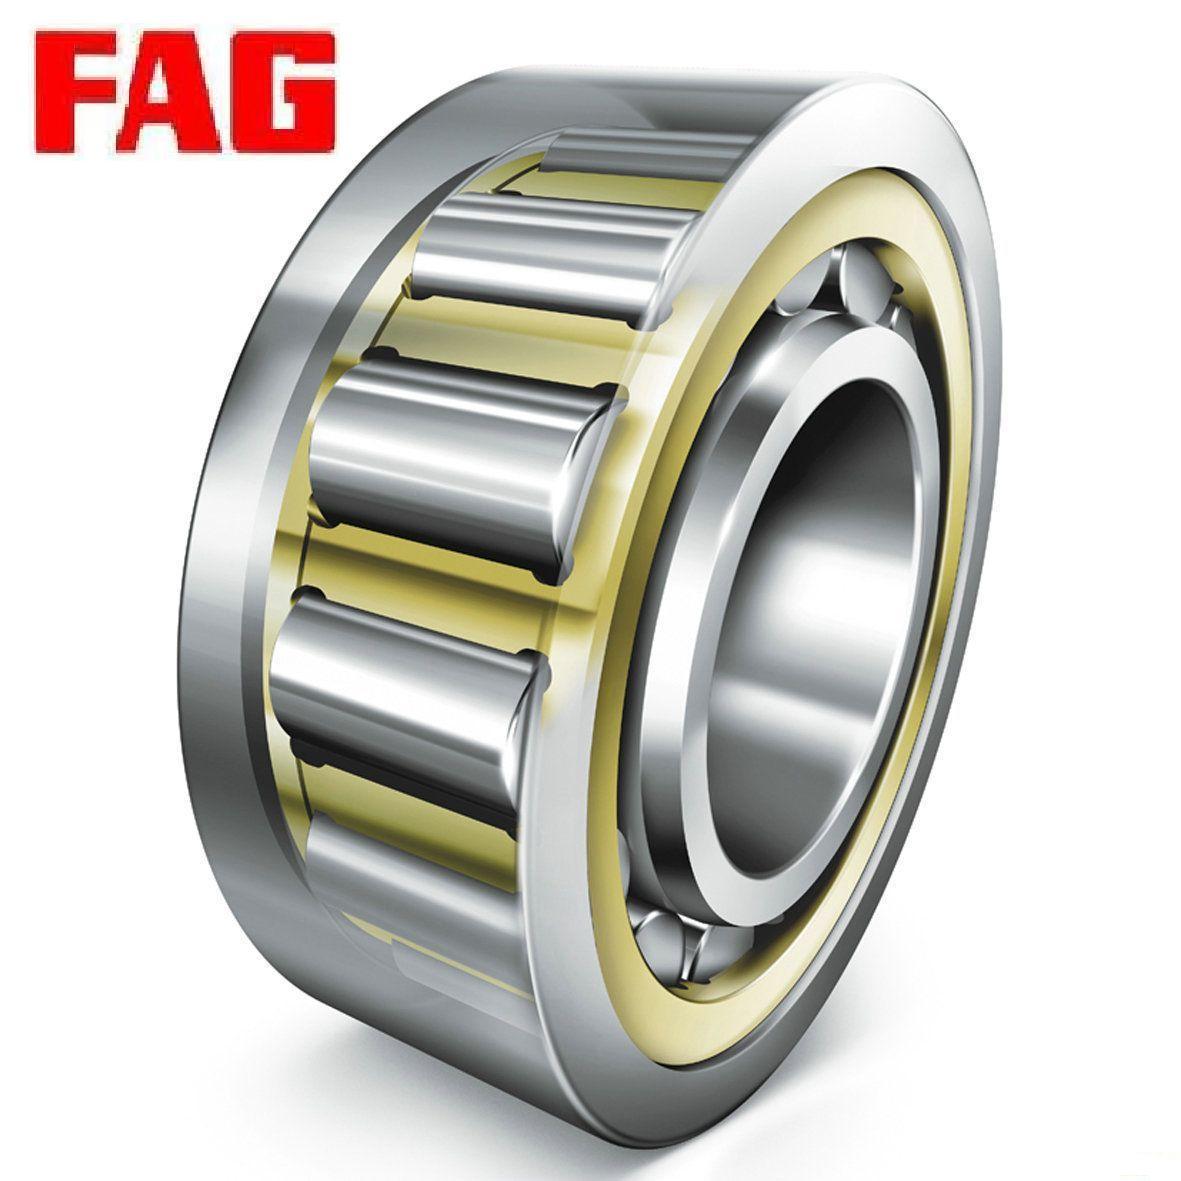 FAG轴承|圆柱滚子轴承